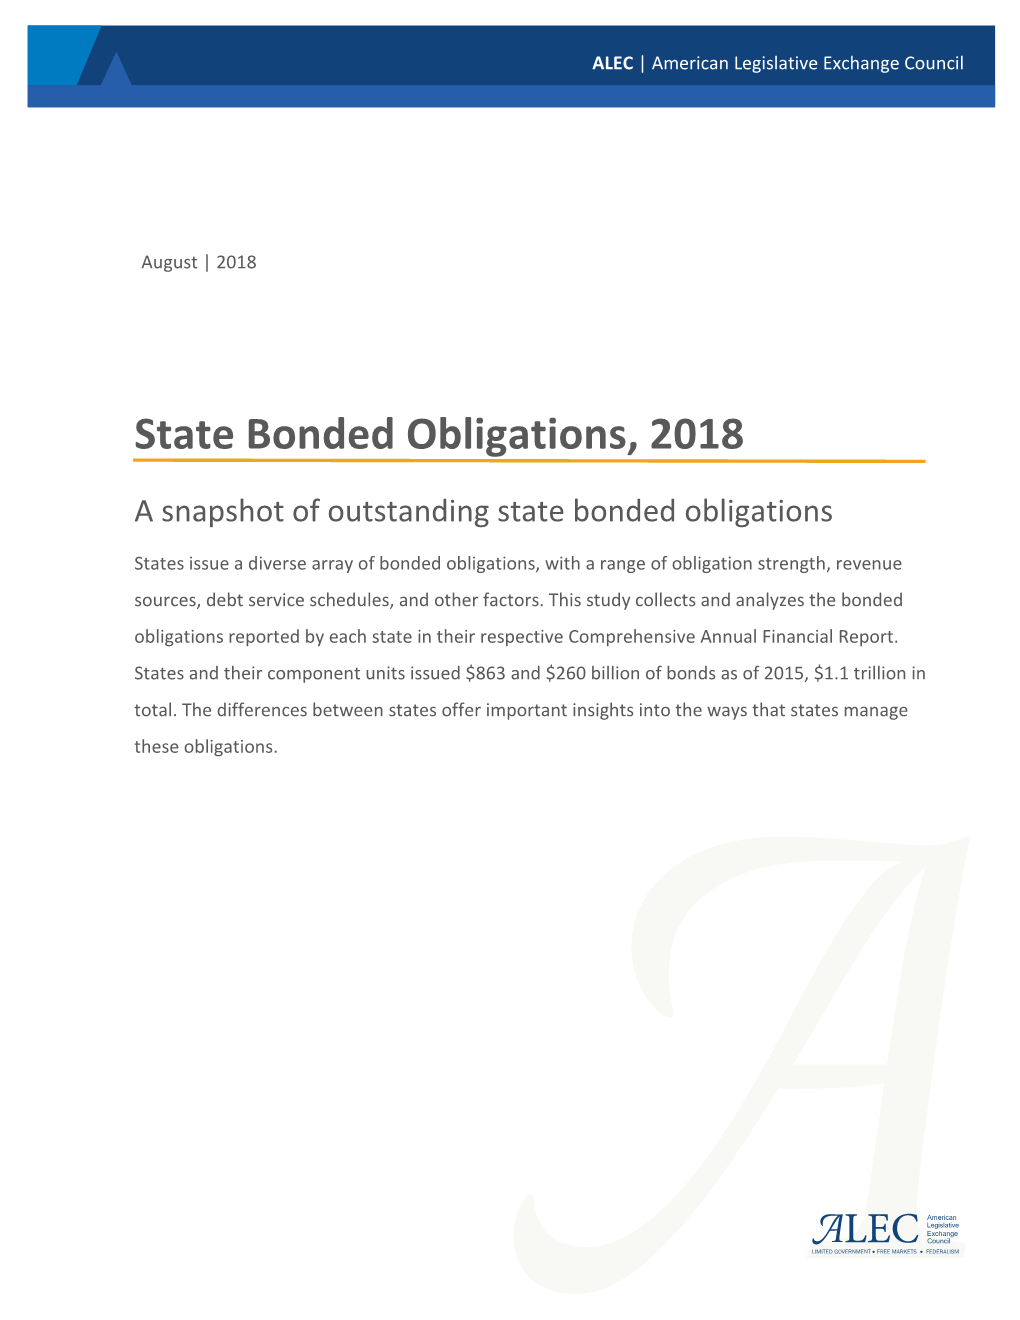 State Bonded Obligations, 2018